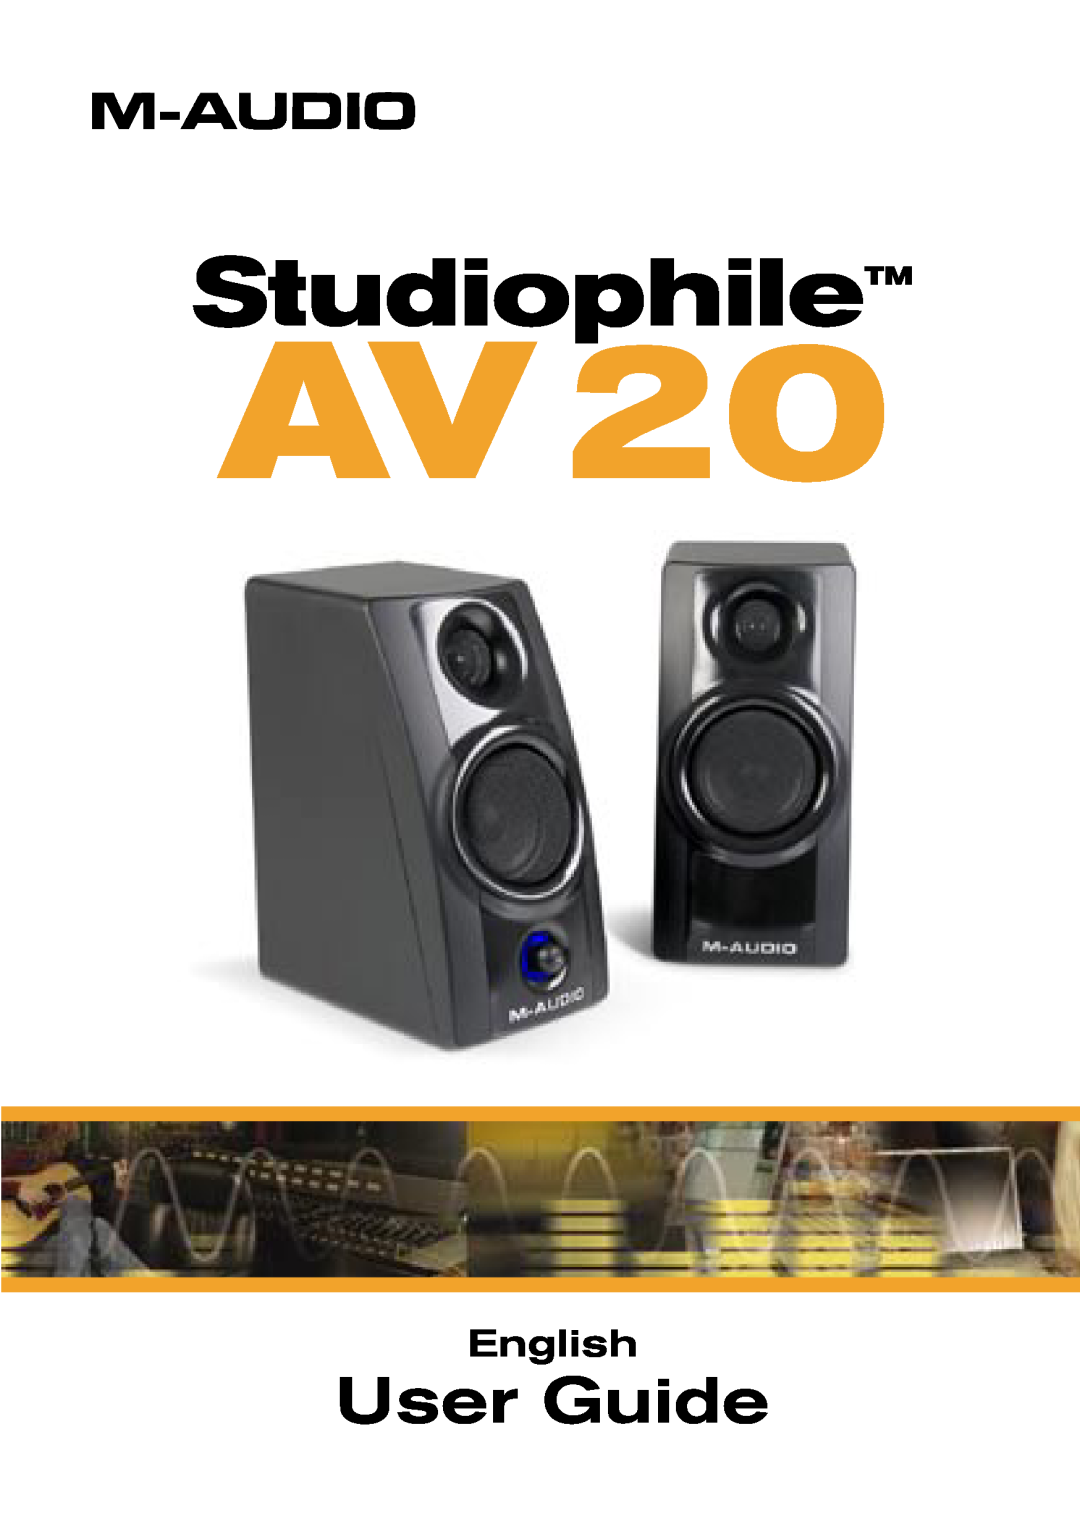 M-Audio AV20 manual StudiophileTM, User Guide, English 